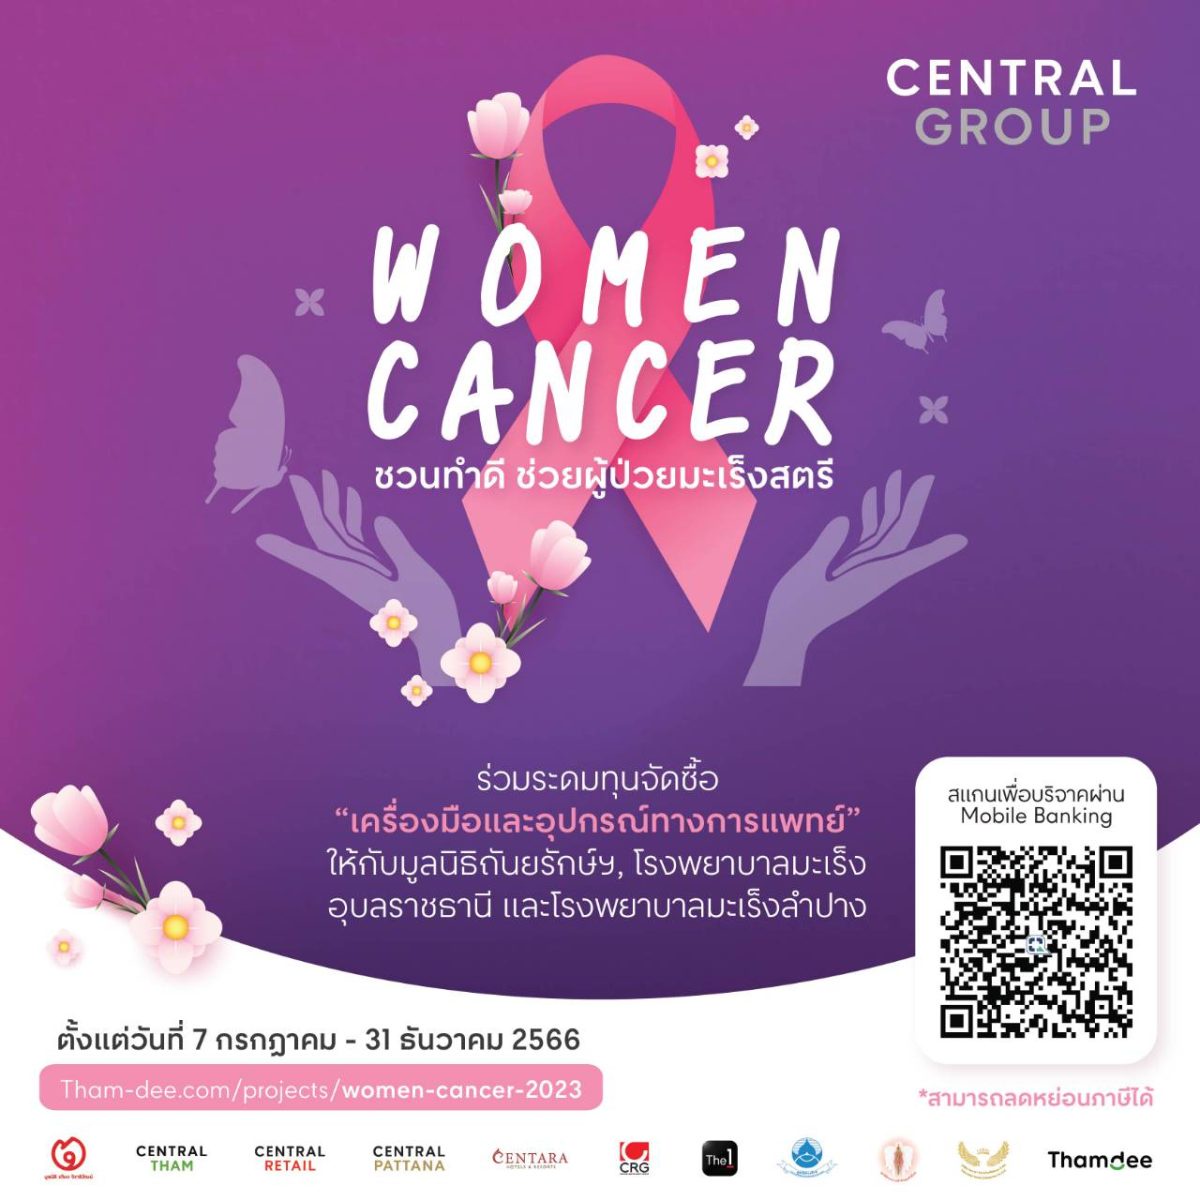 กลุ่มเซ็นทรัล และบริษัทในเครือ ชวนระดมทุนจัดซื้อ เครื่องมือและอุปกรณ์การแพทย์ กับโครงการ Central Group Women Cancer